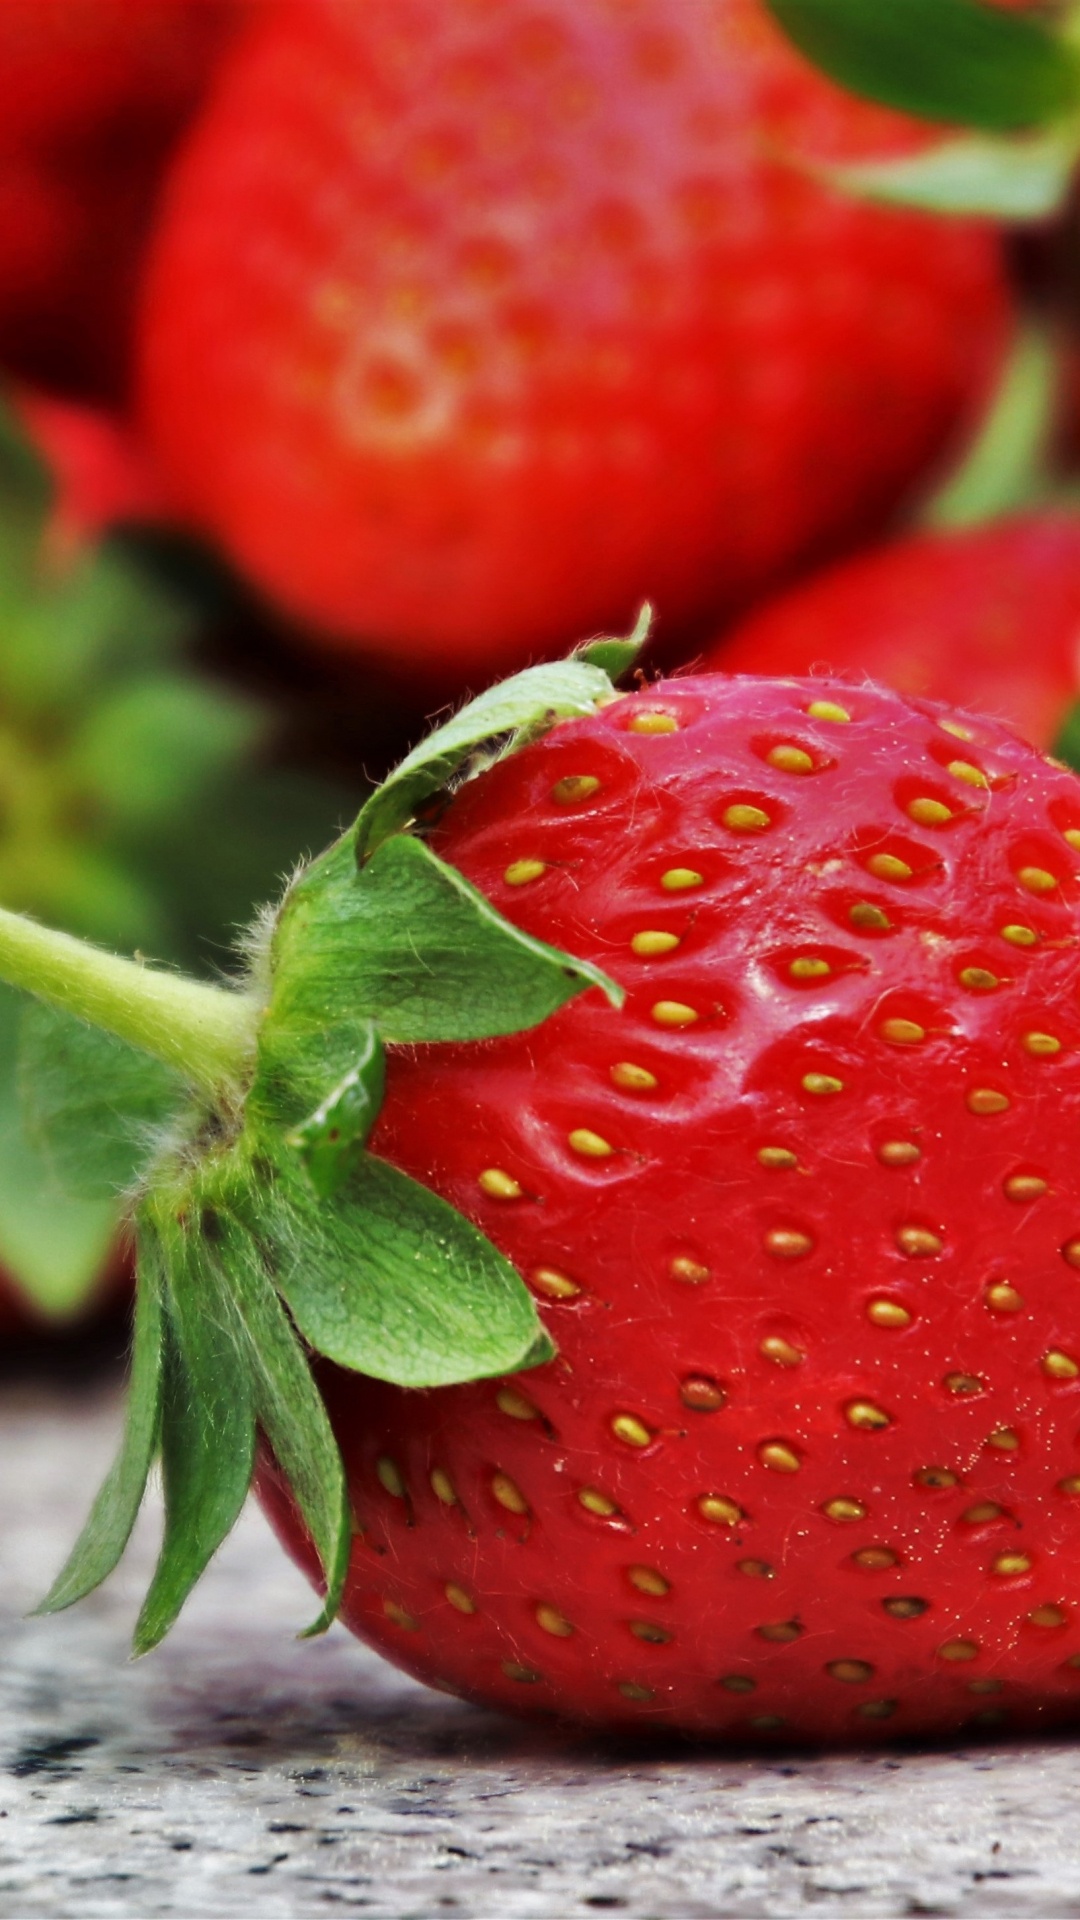 吃, 草莓, 天然的食物, 红色的, 食品 壁纸 1080x1920 允许